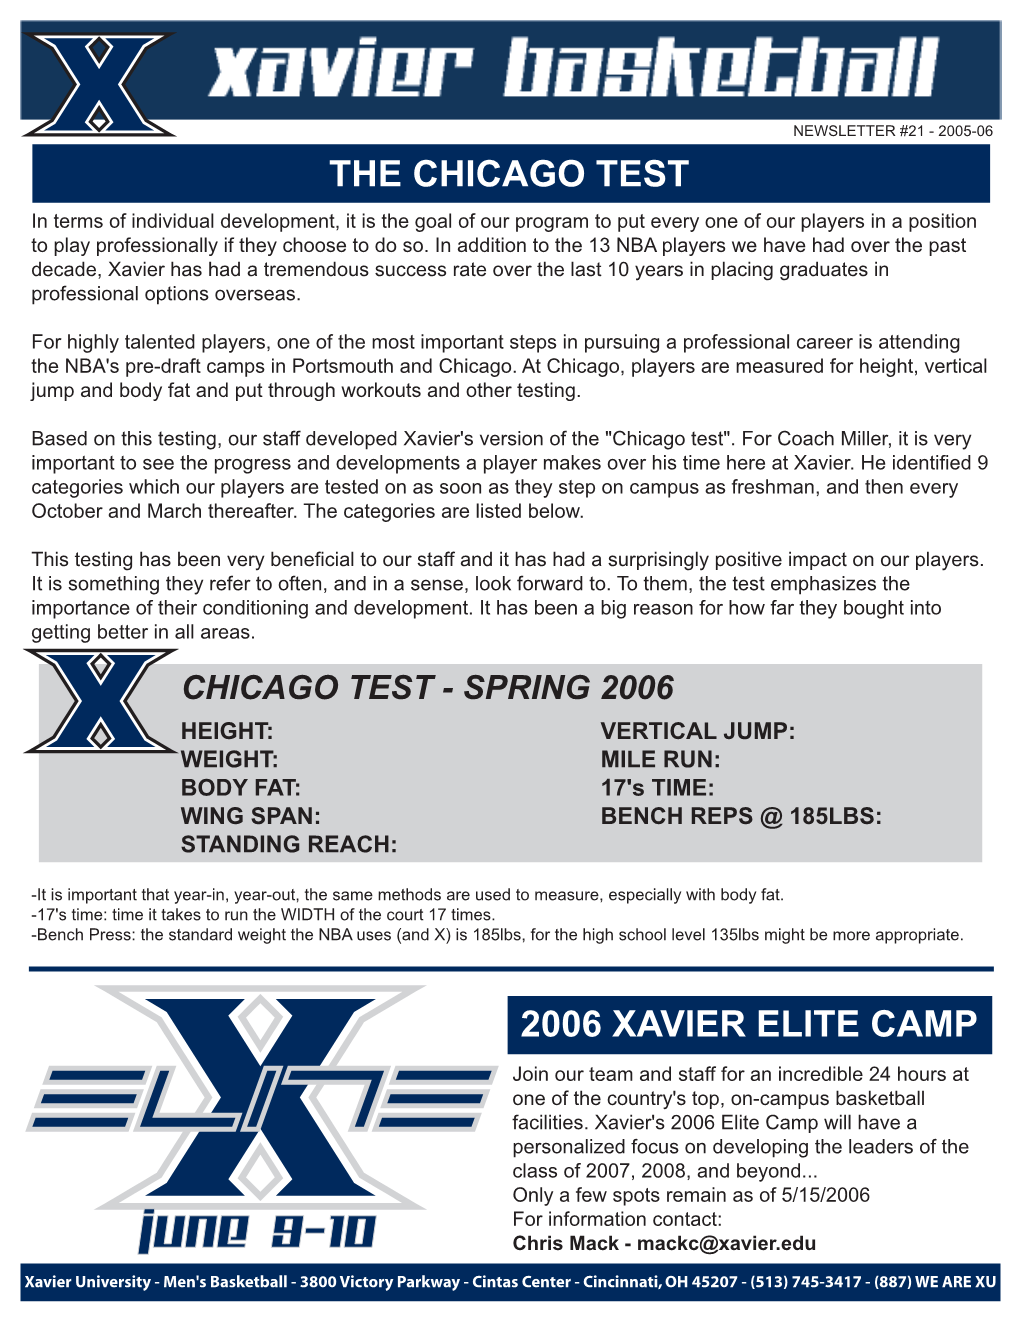 Xavier Newsletter #21 (PDF)